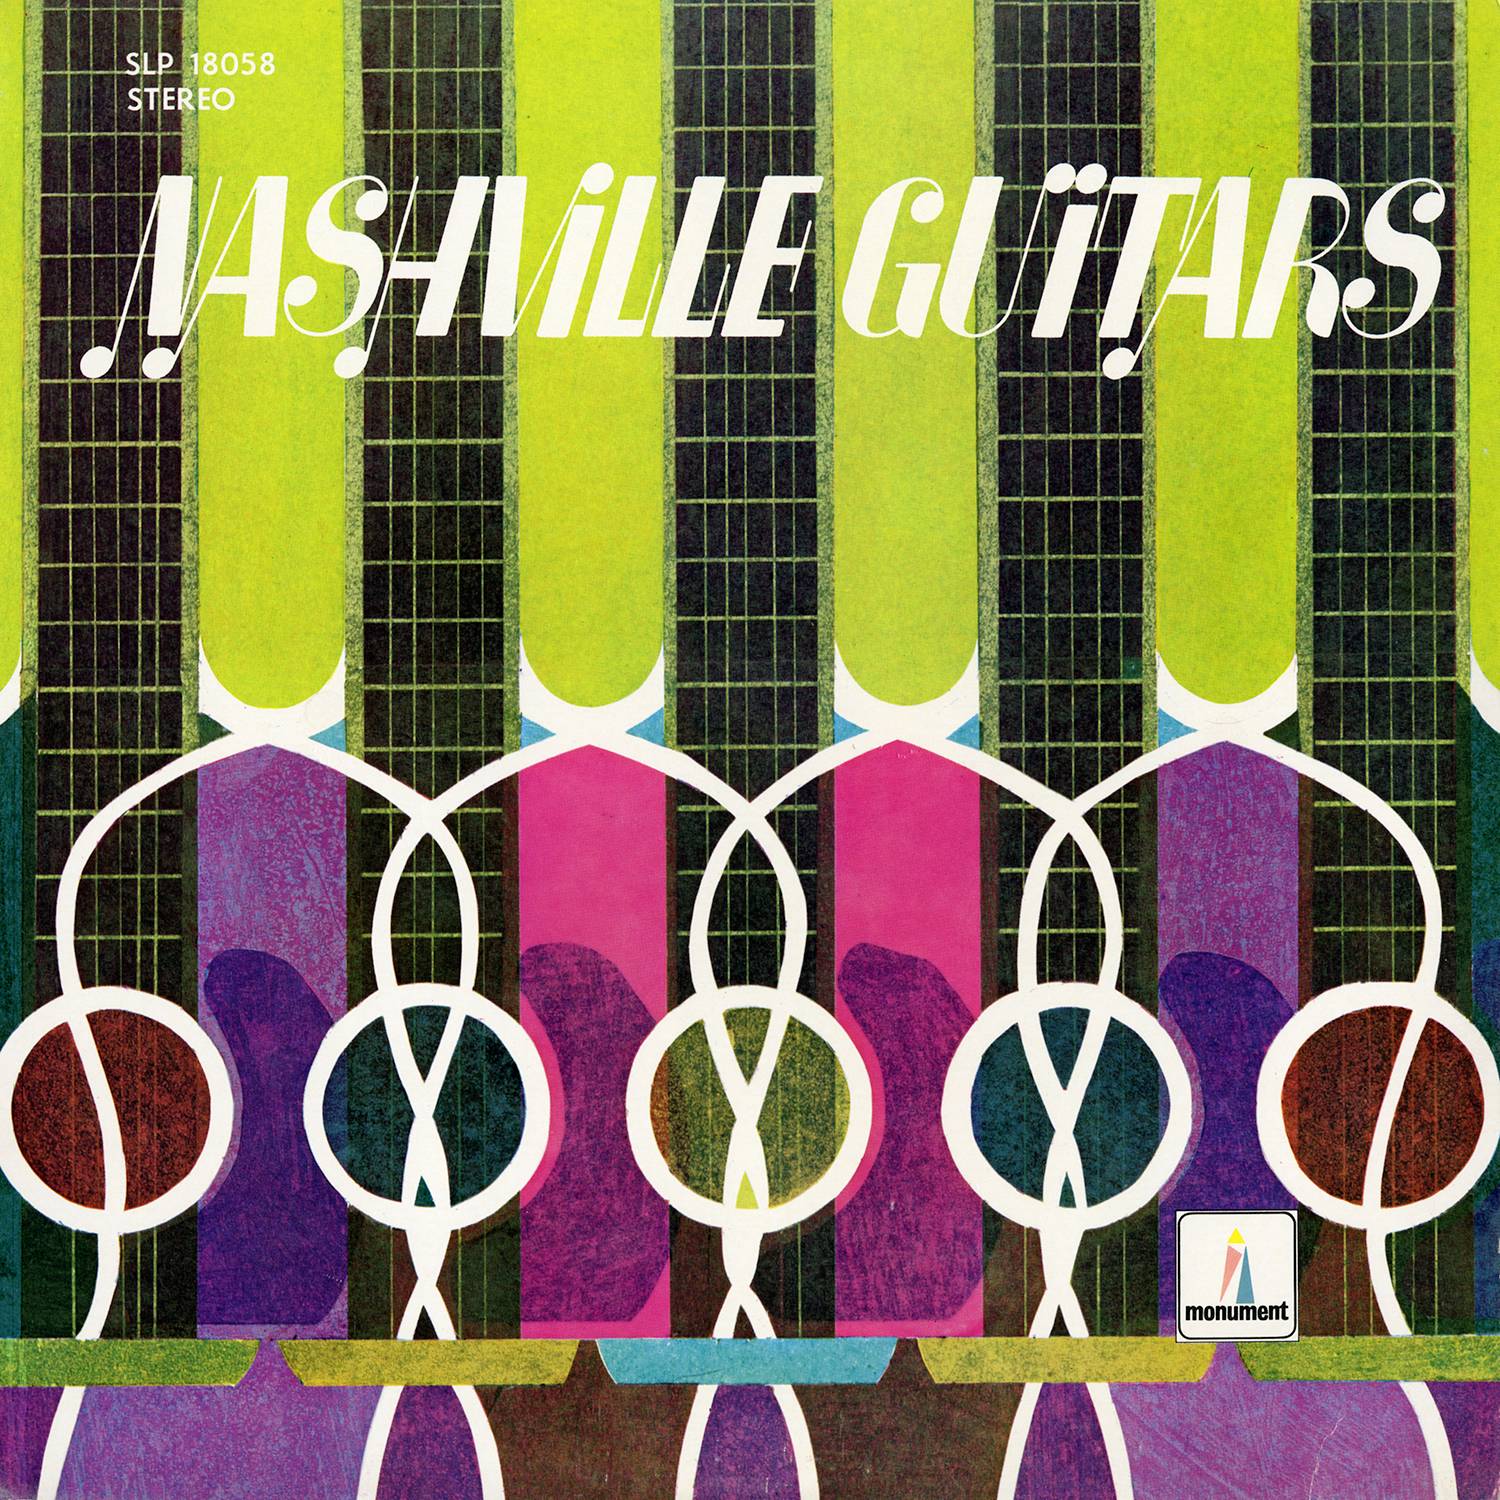 The Nashville Guitars – Nashville Guitars (1966/2016) [AcousticSounds FLAC 24bit/192kHz]